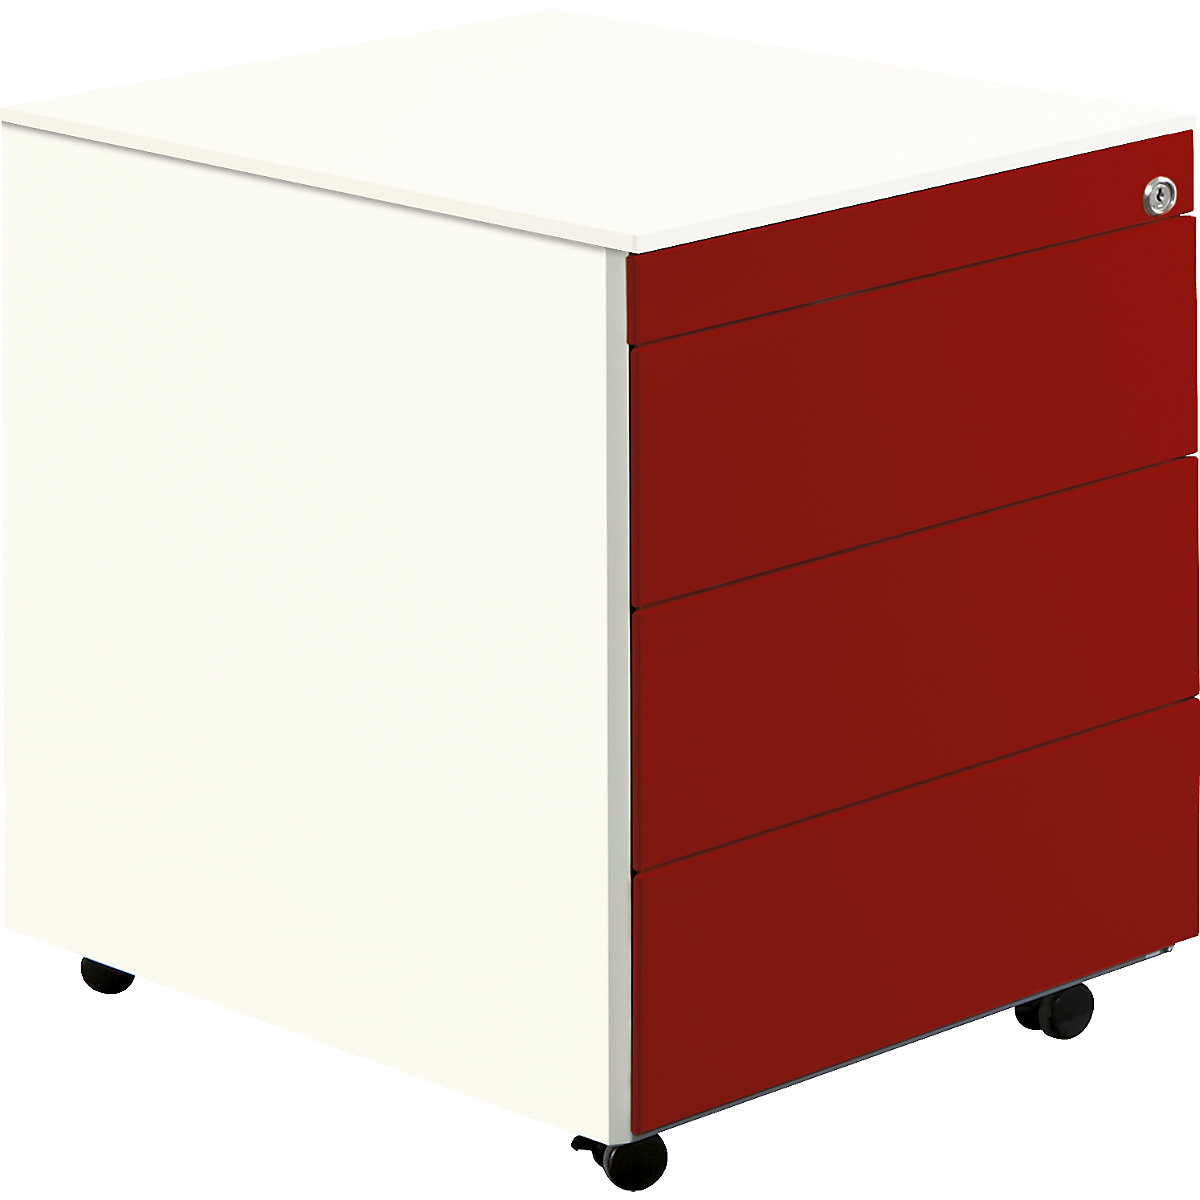 Pokretni ladičar s kotačima – mauser, VxD 570 x 600 mm, čelična ploča, 3 ladice, u čisto bijeloj / rubin crvenoj / čisto bijeloj boji-5